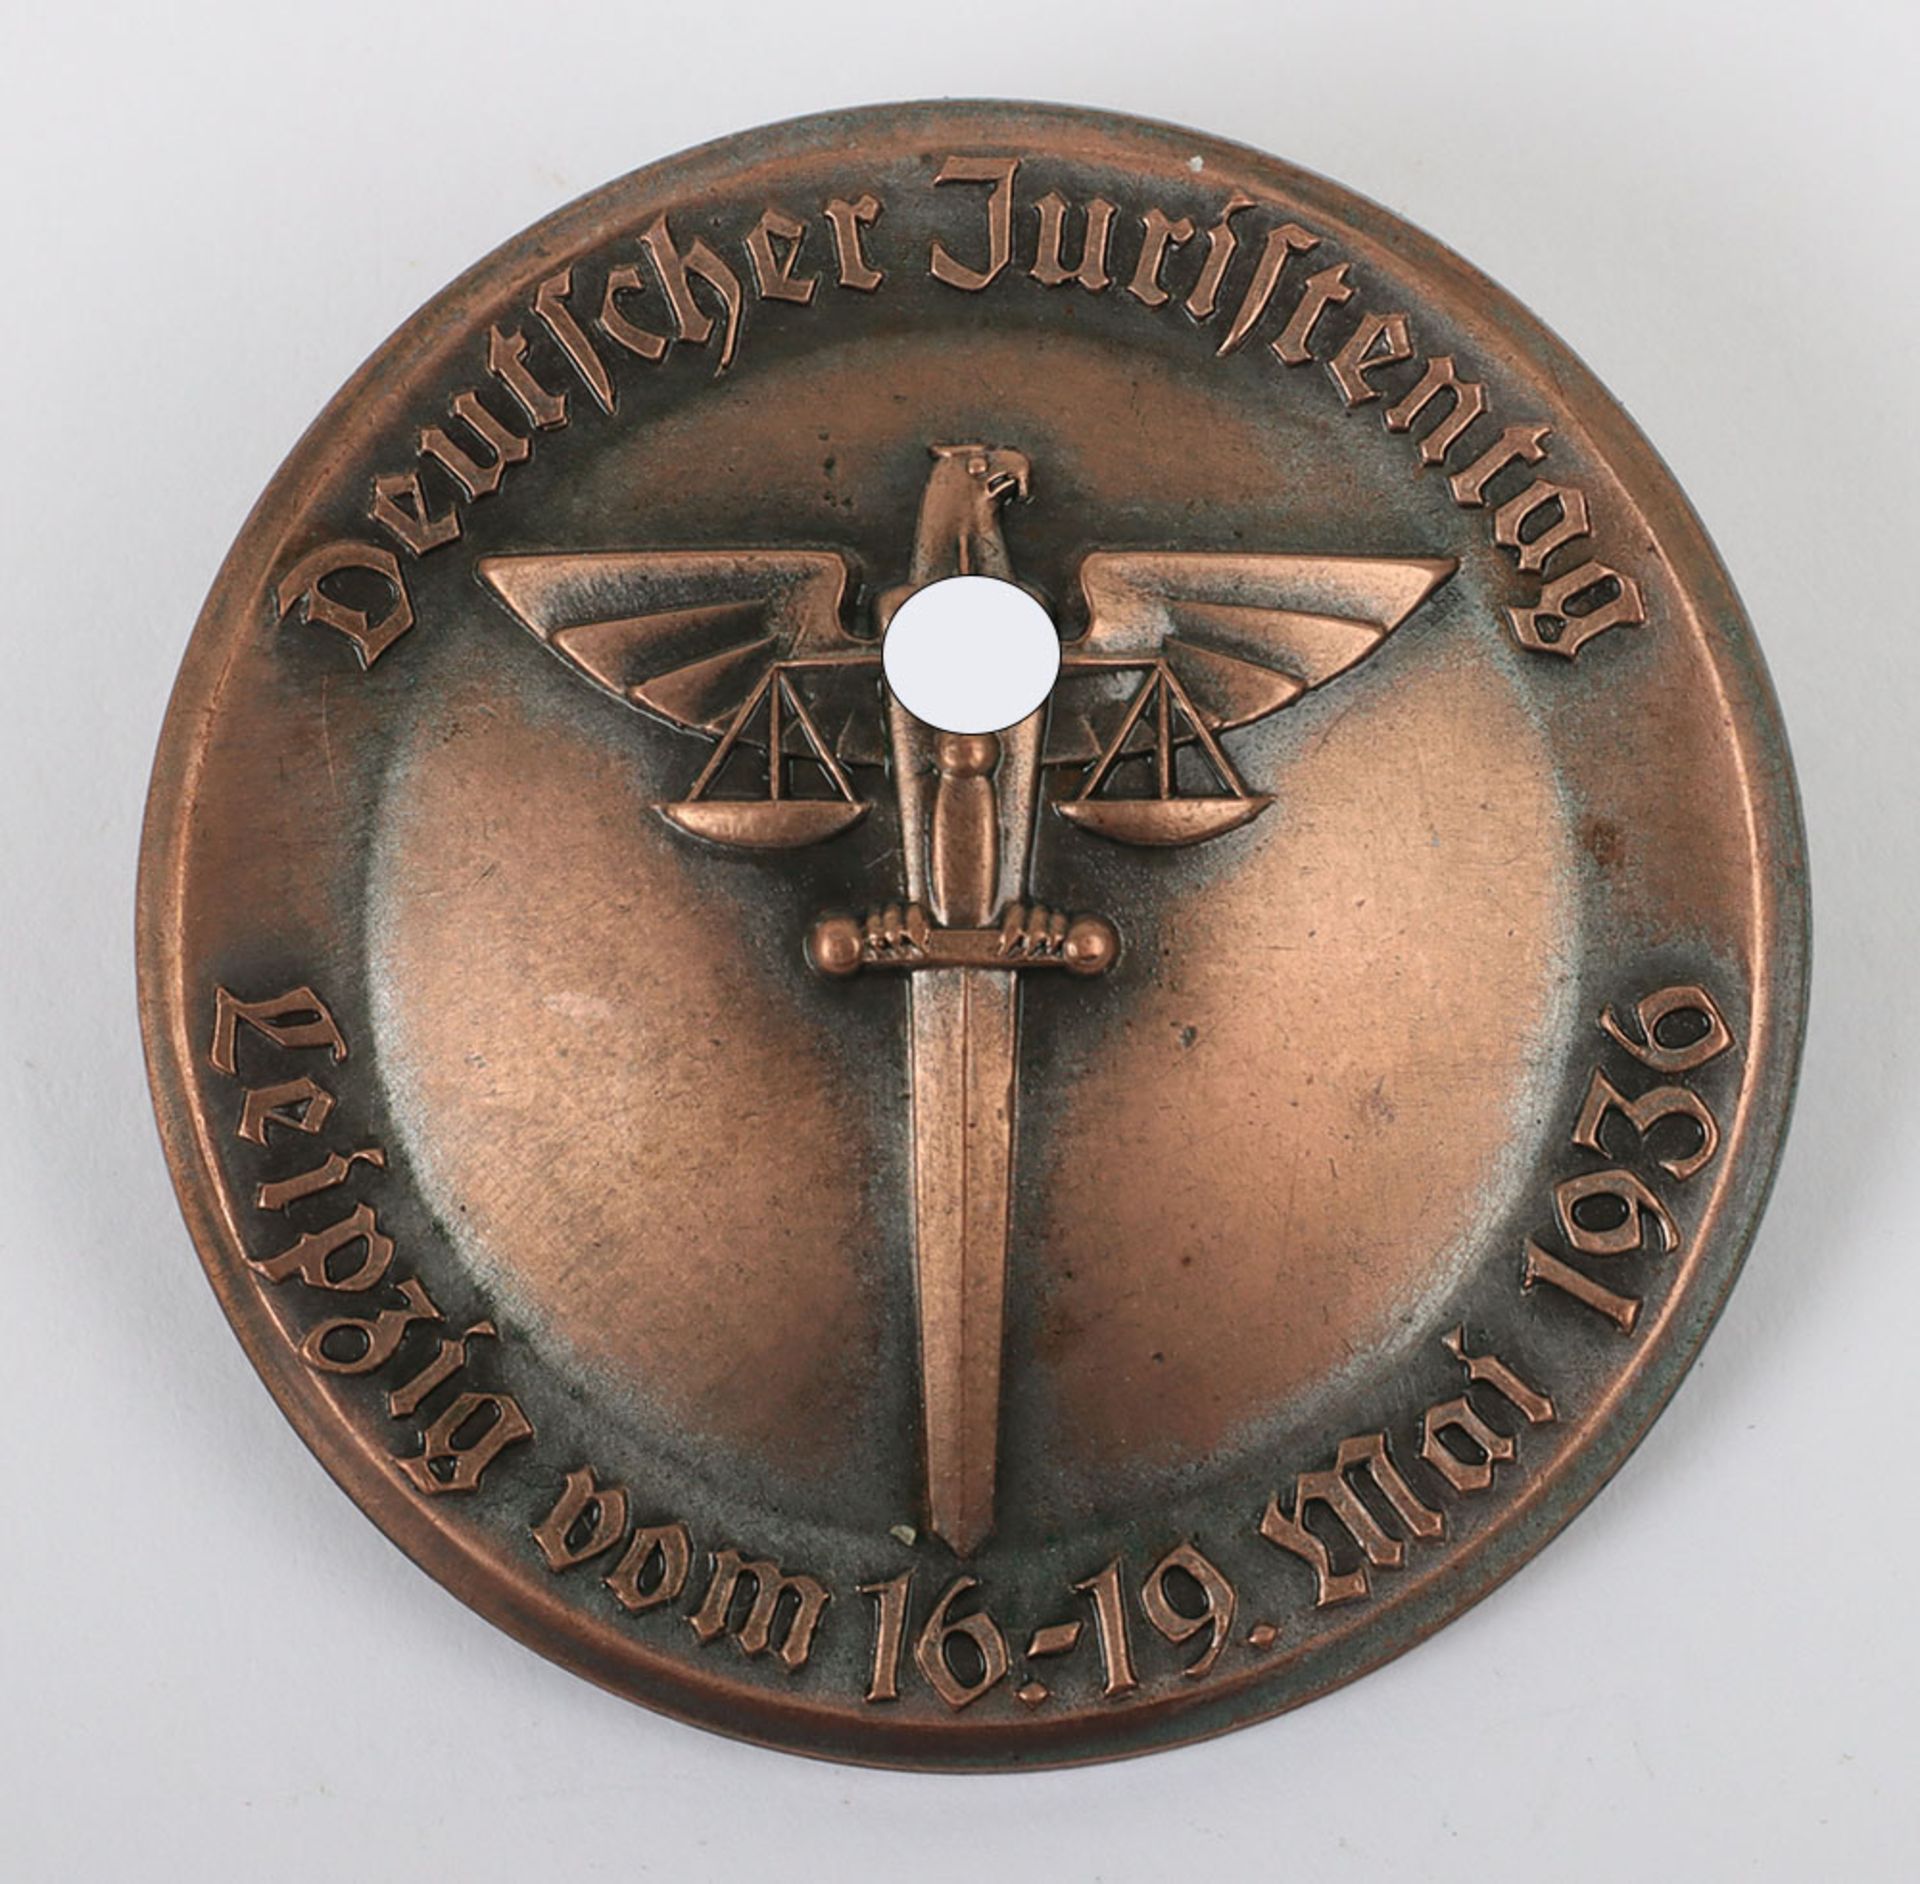 Third Reich Deutscher Juristentag Leipzig 1936 Day Badge